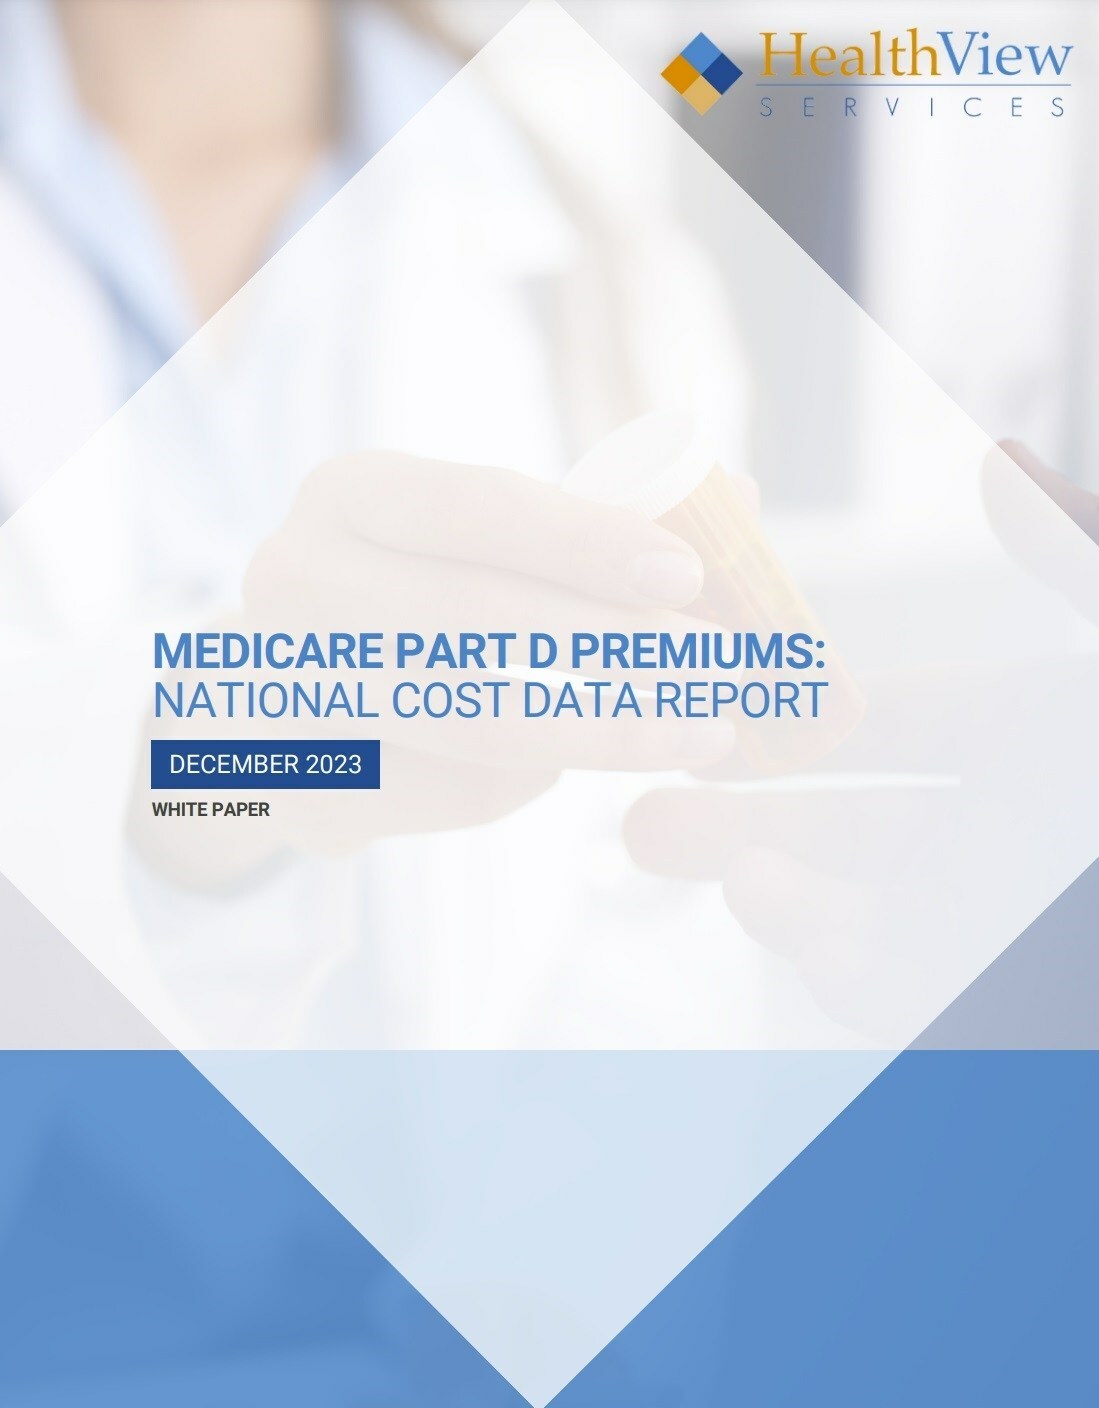 Medicare Part D Premiums National Average Premium Data Shows a 35